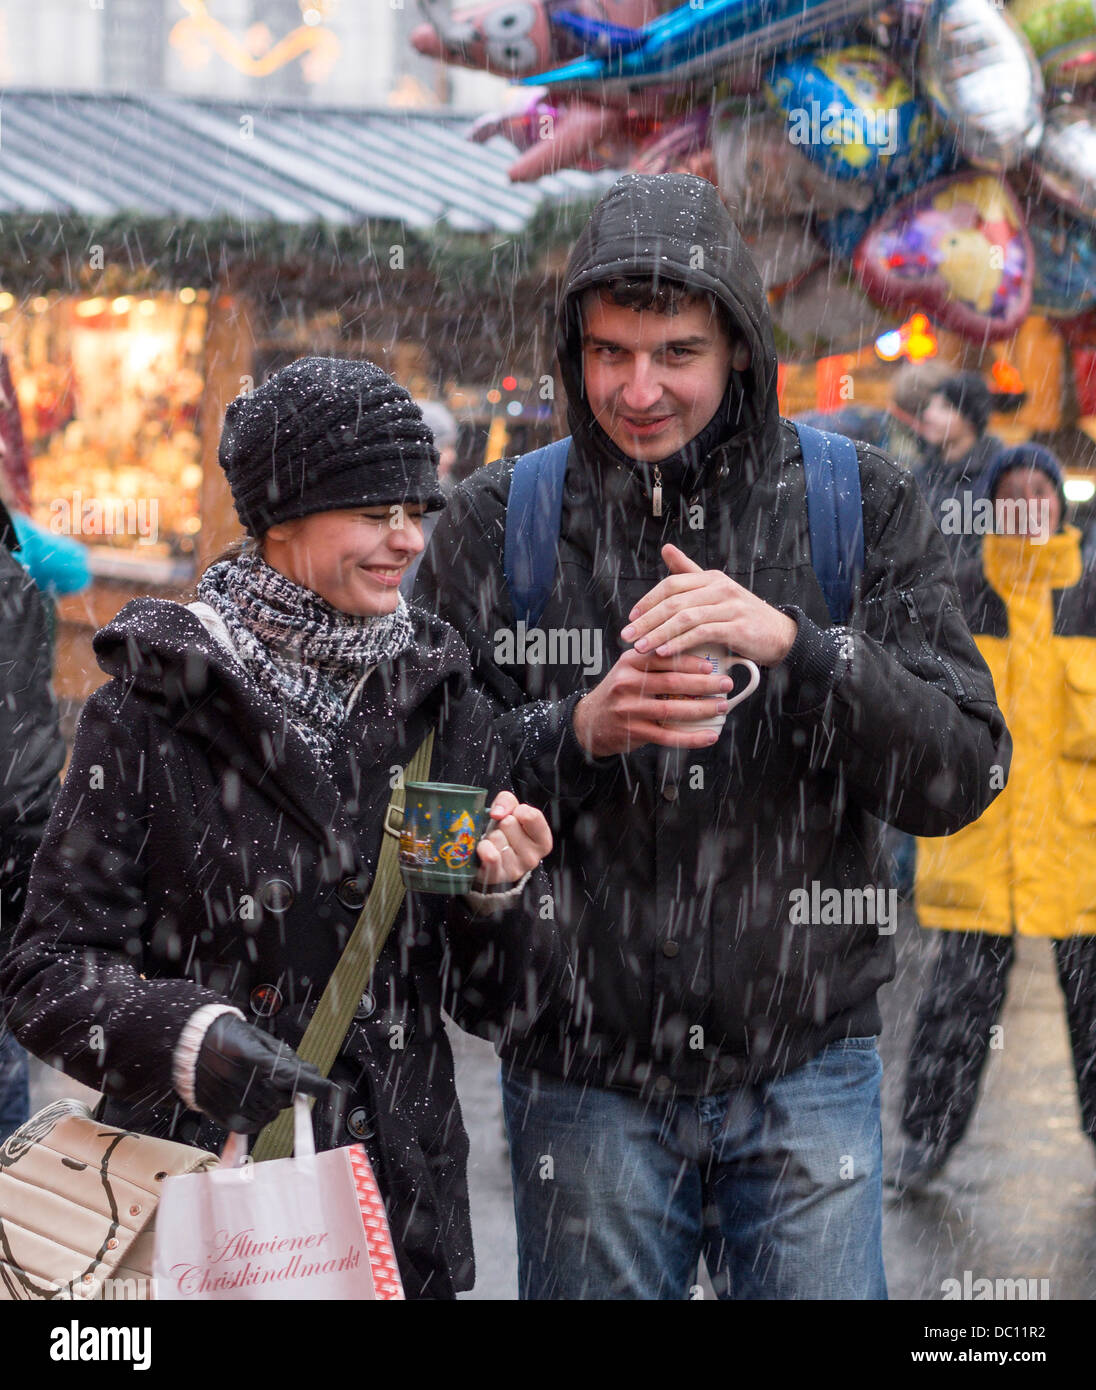 Nevicata improvvisa: proteggere il punzone. Un paio di godere di una improvvisa caduta di neve mentre lo shopping al Christkindlmarkt al Rathaus. Foto Stock